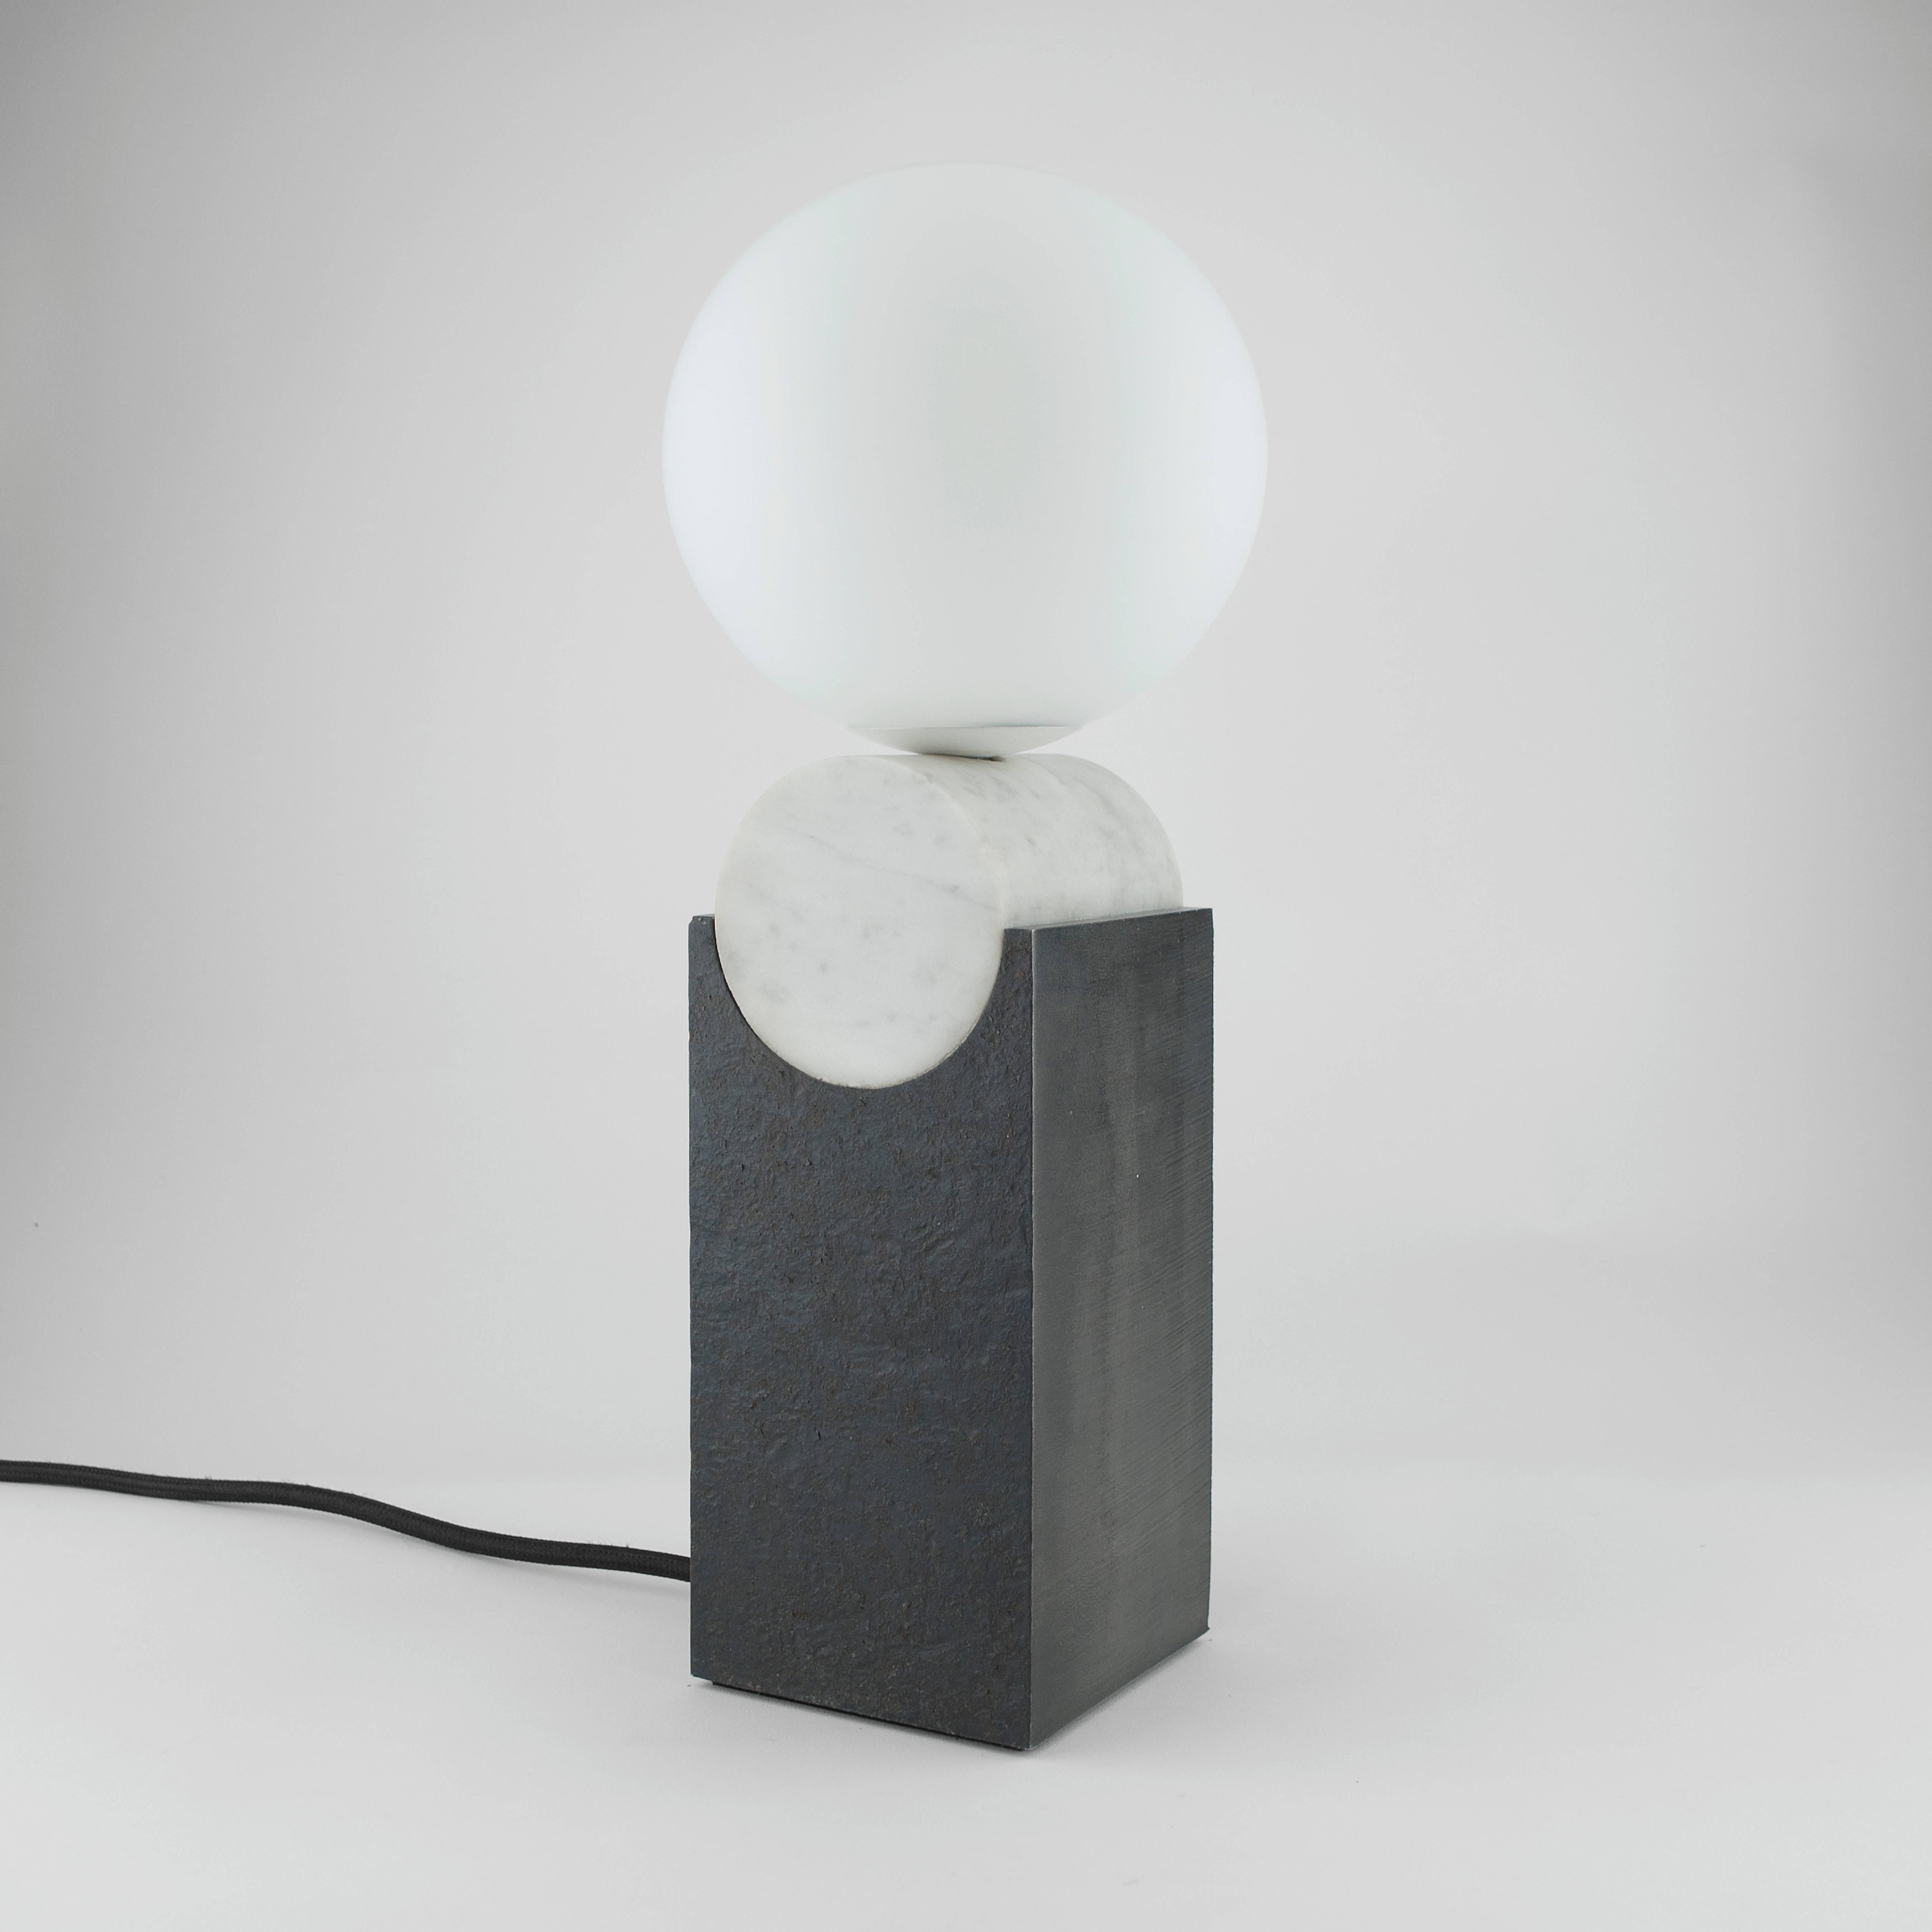 La lampe Monument Lamp de Louis Jobst - Circle est de haute qualité, sur mesure et fabriquée à la main à partir de matières premières solides. La base est finie avec une patine noire et découpée dans une billette d'acier de 90 mm d'épaisseur. Les